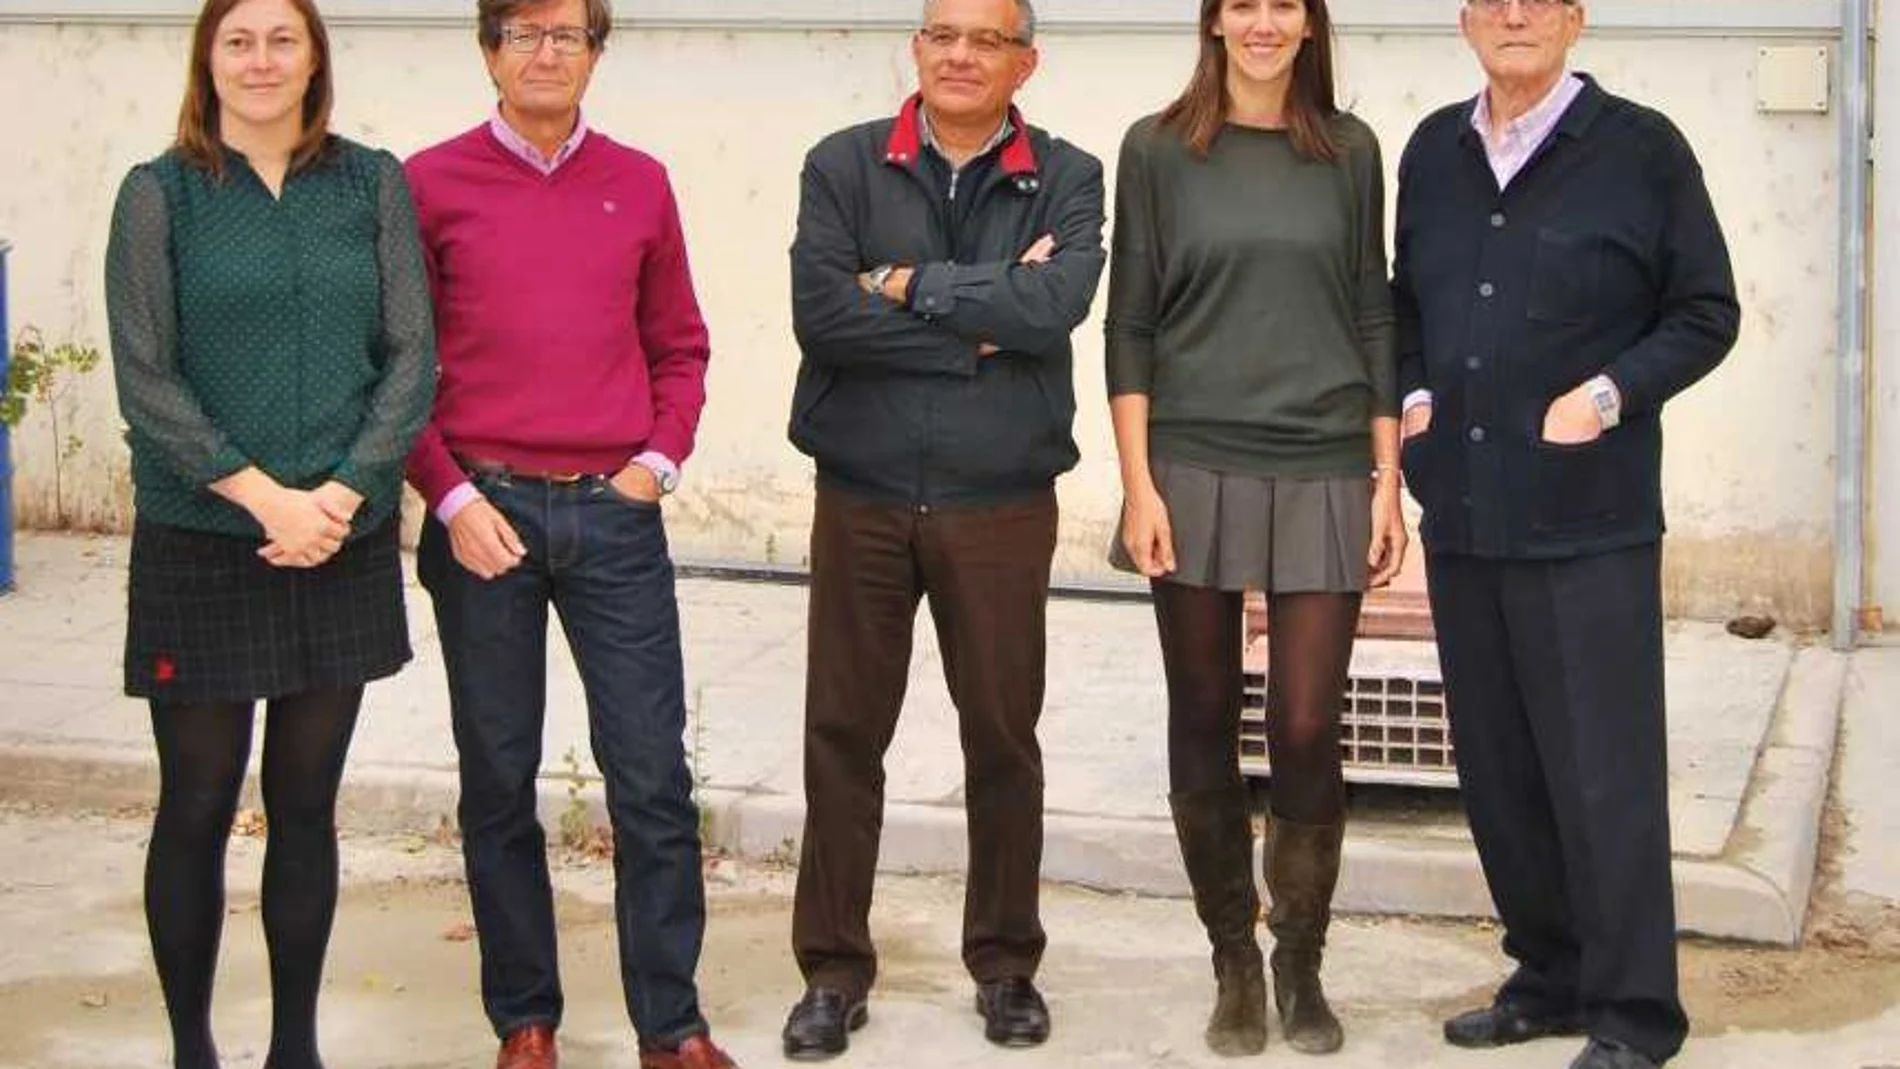 El equipo investigador: Verónica Calderón, Carlos Junco Petrement, Ángel Rodríguez Sáiz, Sara Gutiérrez González y Jesús Gadea Sáinz